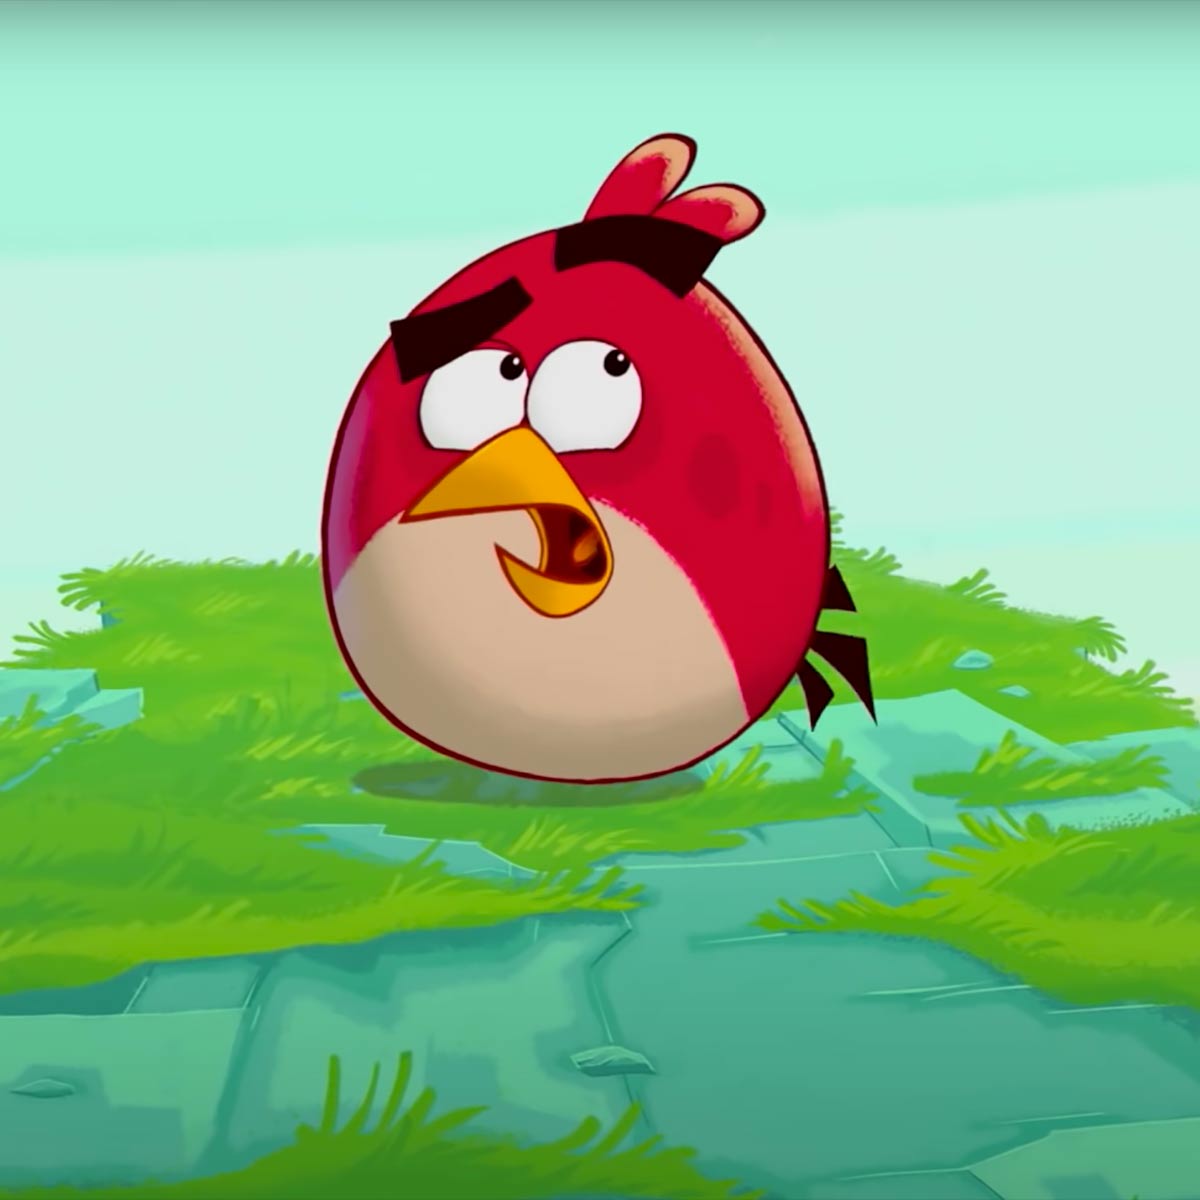 Play Angry Birds Piano Music Sheet On Virtual Piano - roblox piano keyboard sheets animals